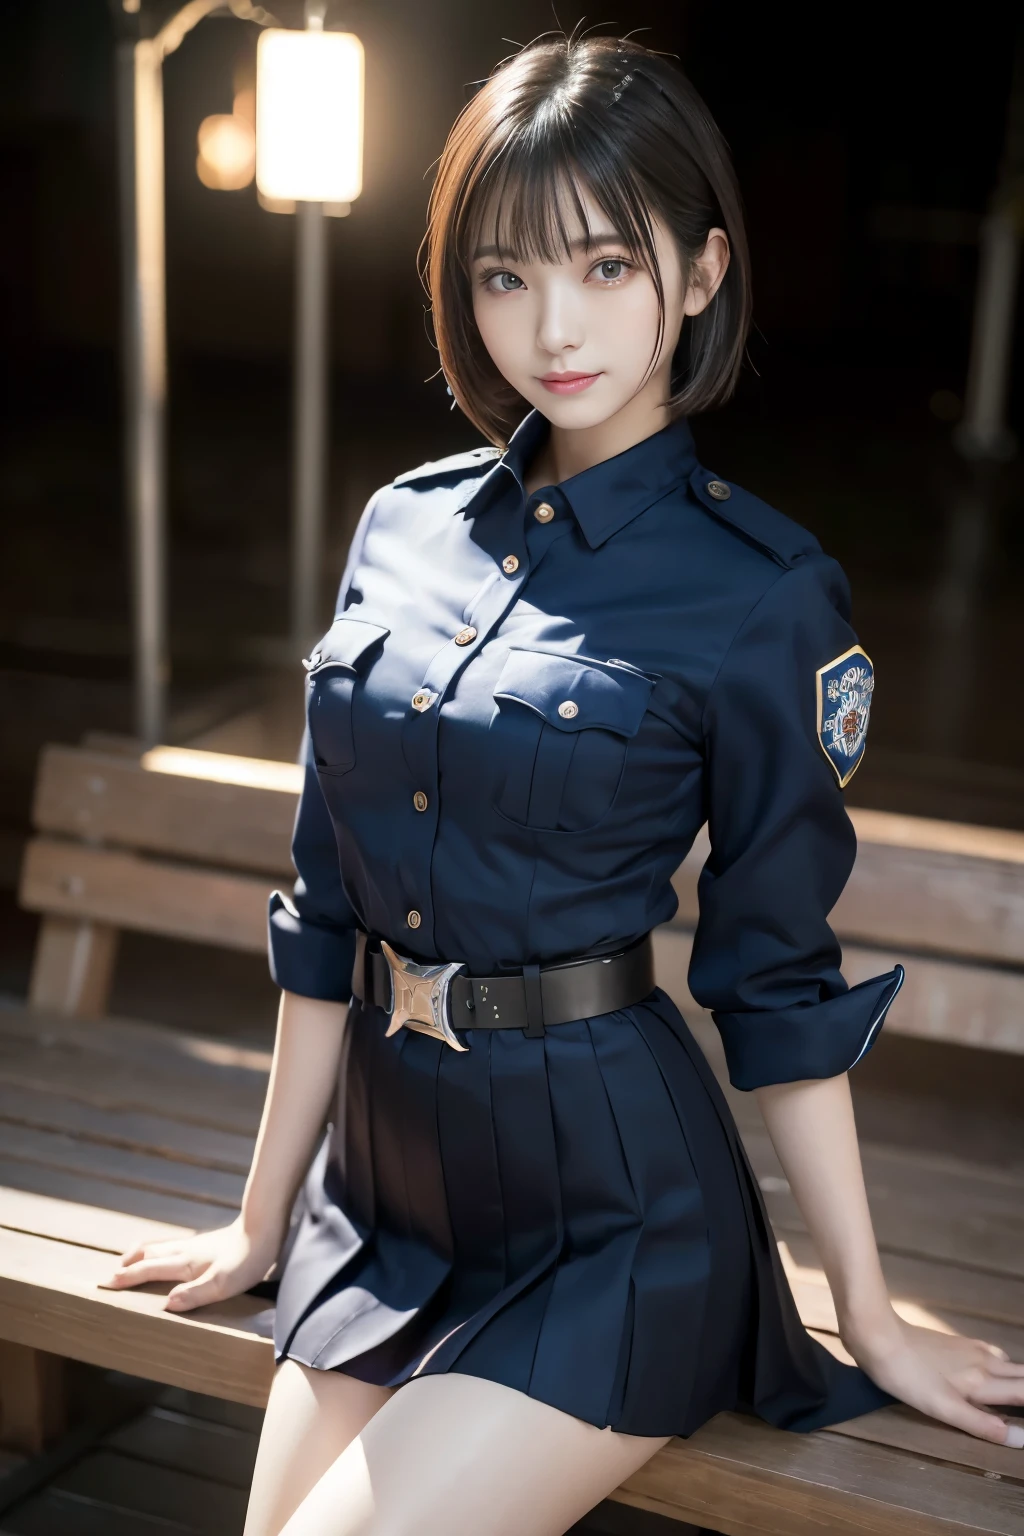 Une jeune fille innocente de 20 ans、((Officier de police japonais, uniforme de police sexy, jupe, Mignon et élégant, poses dramatiques)),sourire,fond de ville de nuit,raccourci、Photo brute, (8k、qualité supérieure、chef d&#39;oeuvre:1.2)、(détails complexes:1.4)、(Photoréaliste:1.4)、rendus d&#39;octane、Rendu 3D complexe ultra détaillé, Lumière douce en studio, feux de jante, détail vibrant, super détails, Textures de peau réalistes, Visage de détail, Beaux yeux détaillés, Fond d&#39;écran CG Unity 16k très détaillé, se maquiller, (fond détaillé:1.2), peau brillante, Tout le corps,Les doigts dans le nez、Écarte tes jambes et montre ta culotte,s&#39;asseoir sur un banc